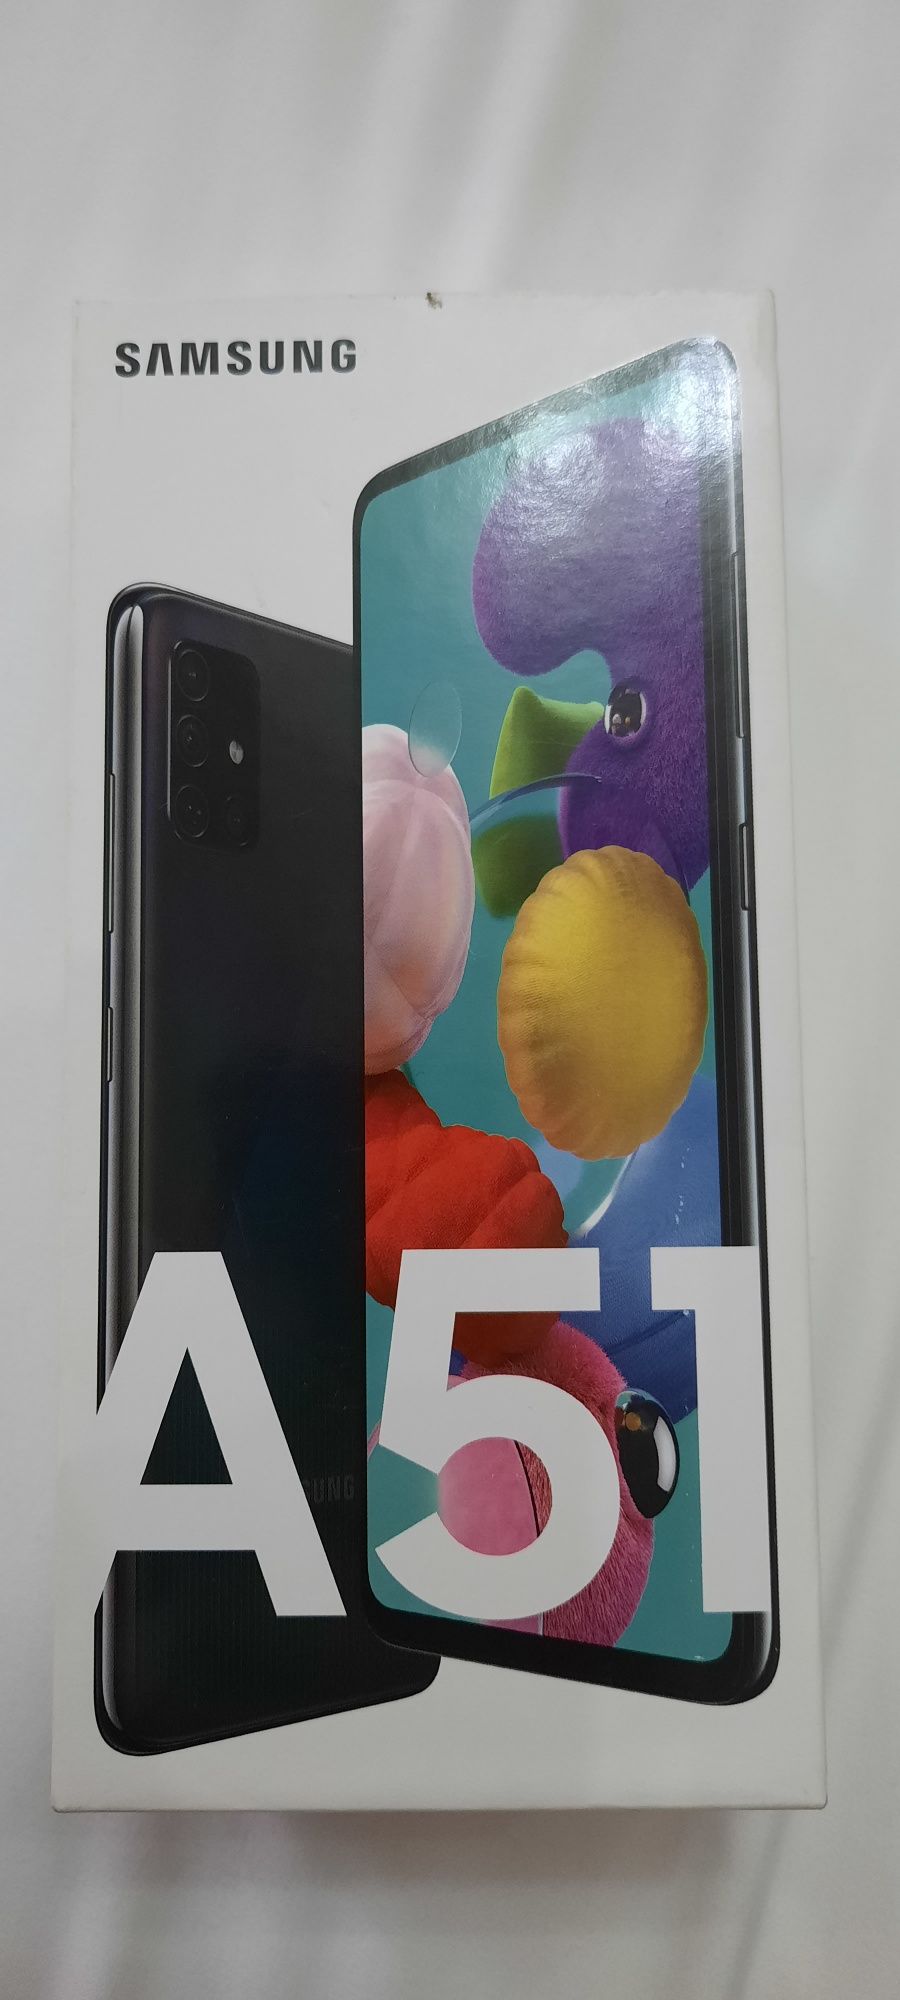 Samsung Galaxy A51 4/64 black